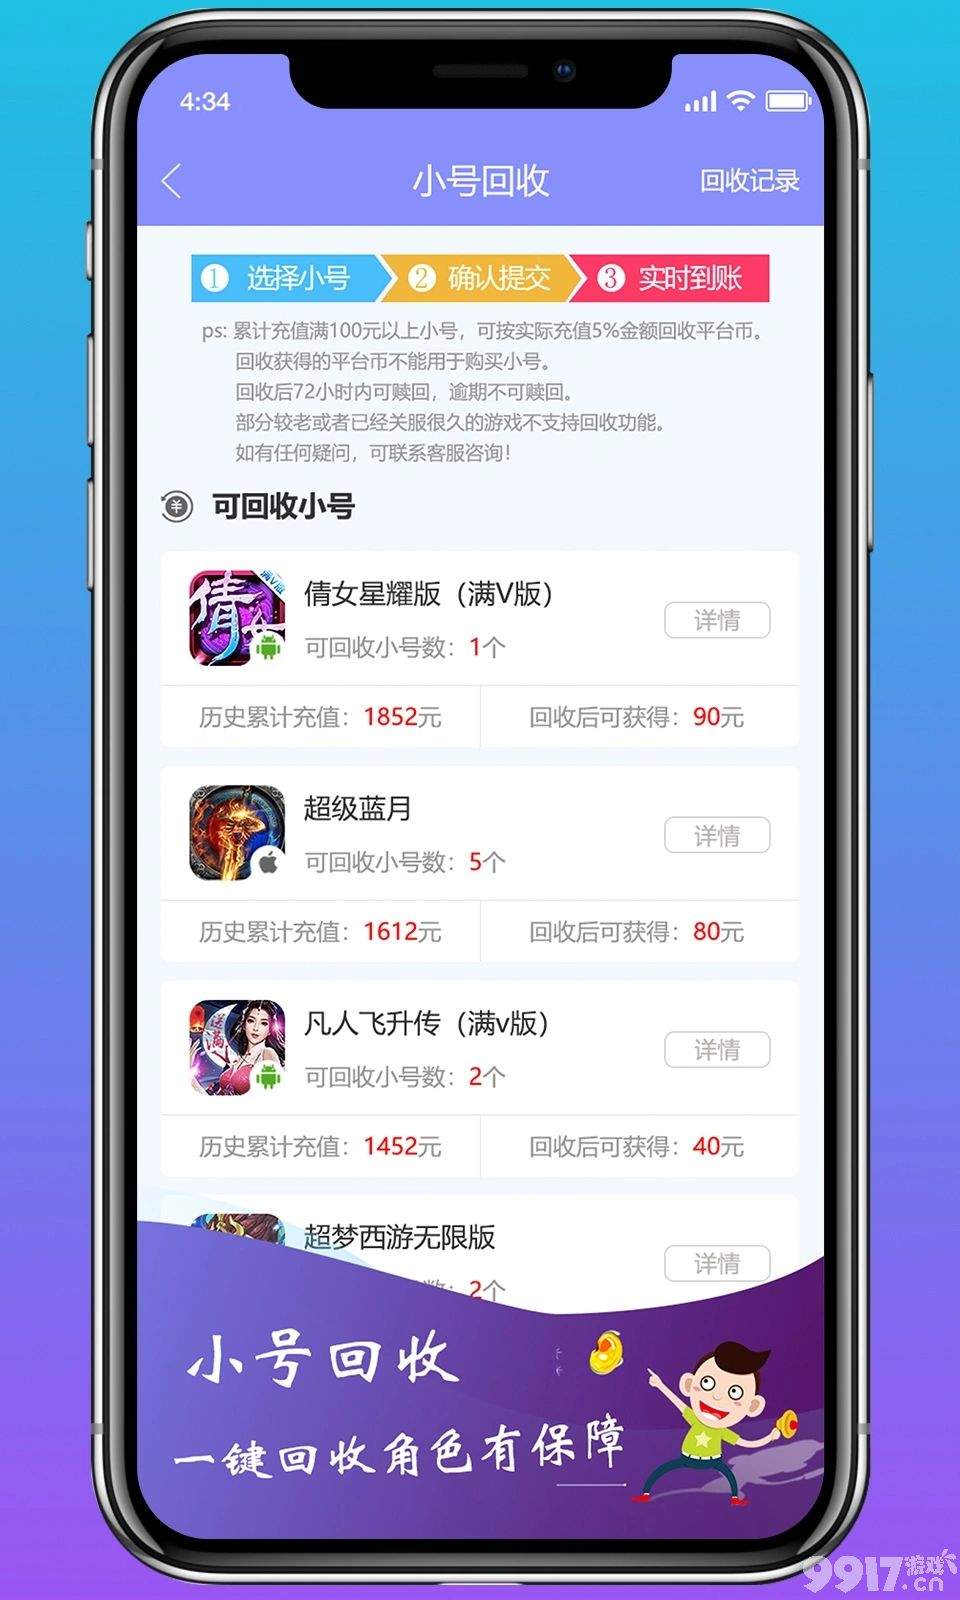 0氪金手游推荐-零氪游戏盒子app官方下载-正版安全无插件-上线就送满VIP22+648充值